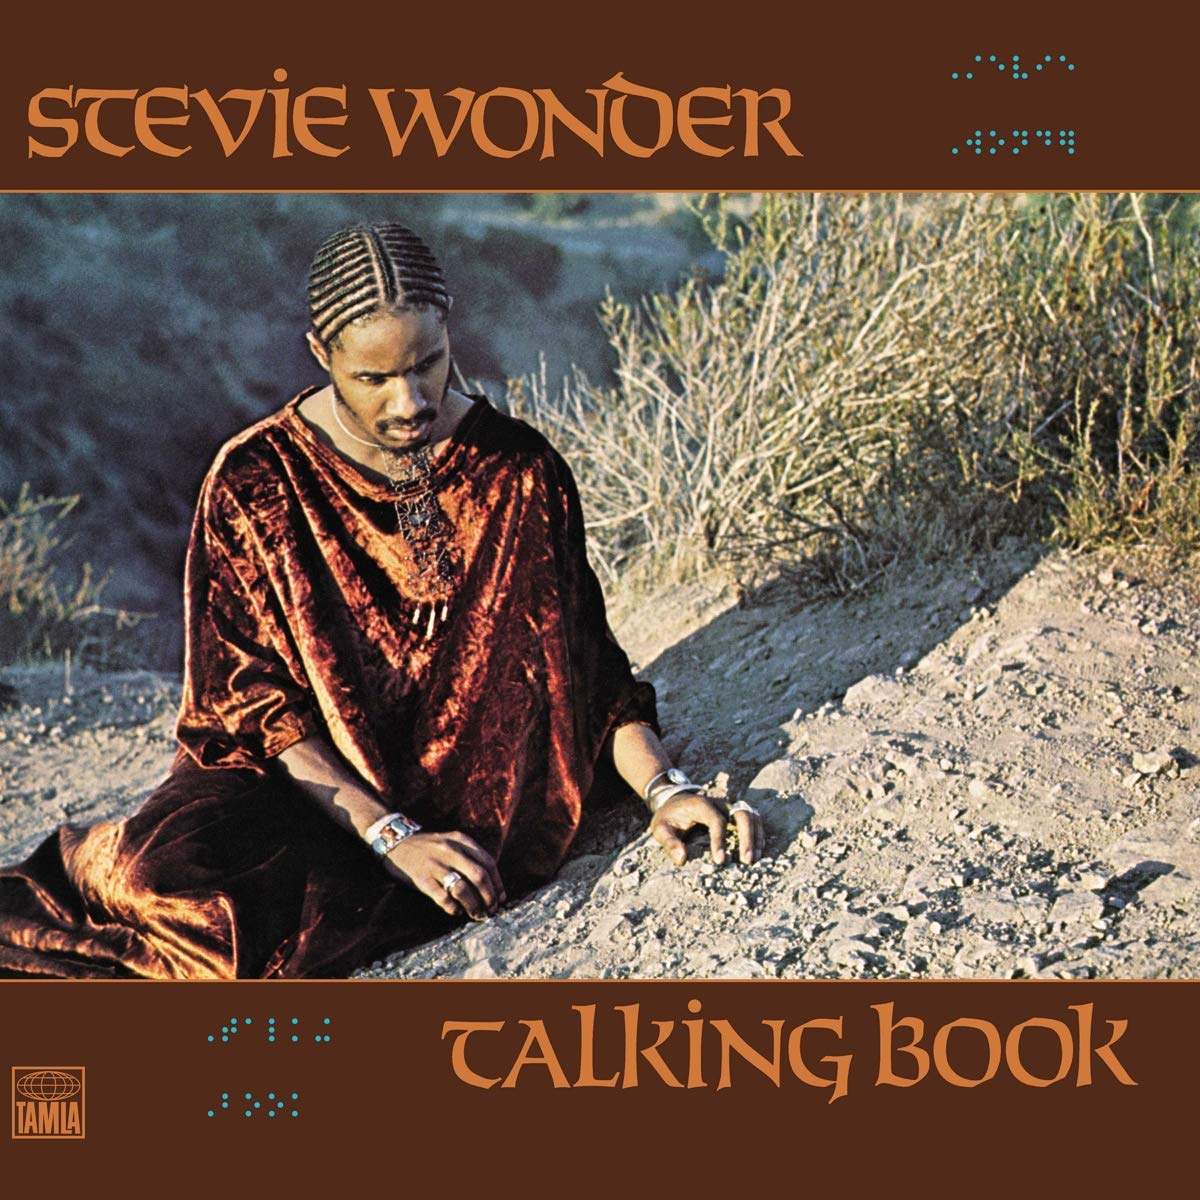 Stevie Wonder Talking book